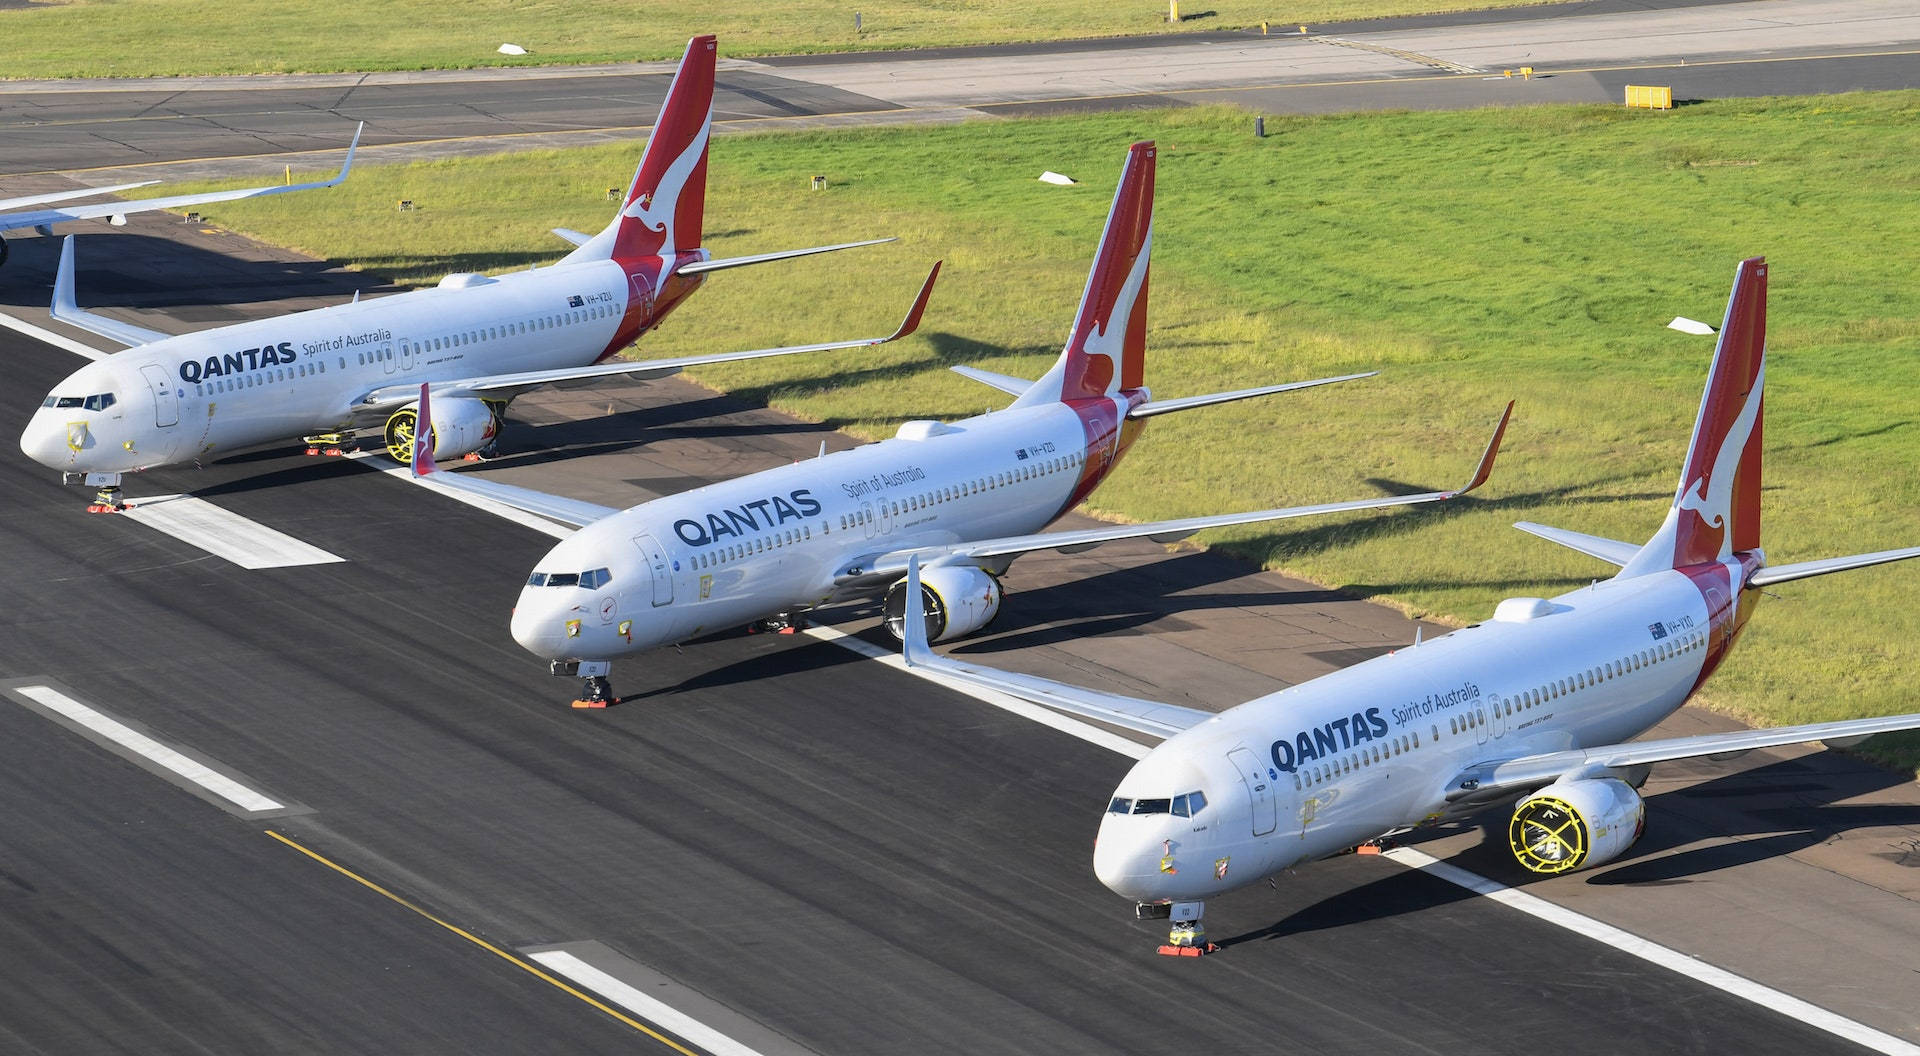 Qantas Aircrafts At The Airport Wallpaper